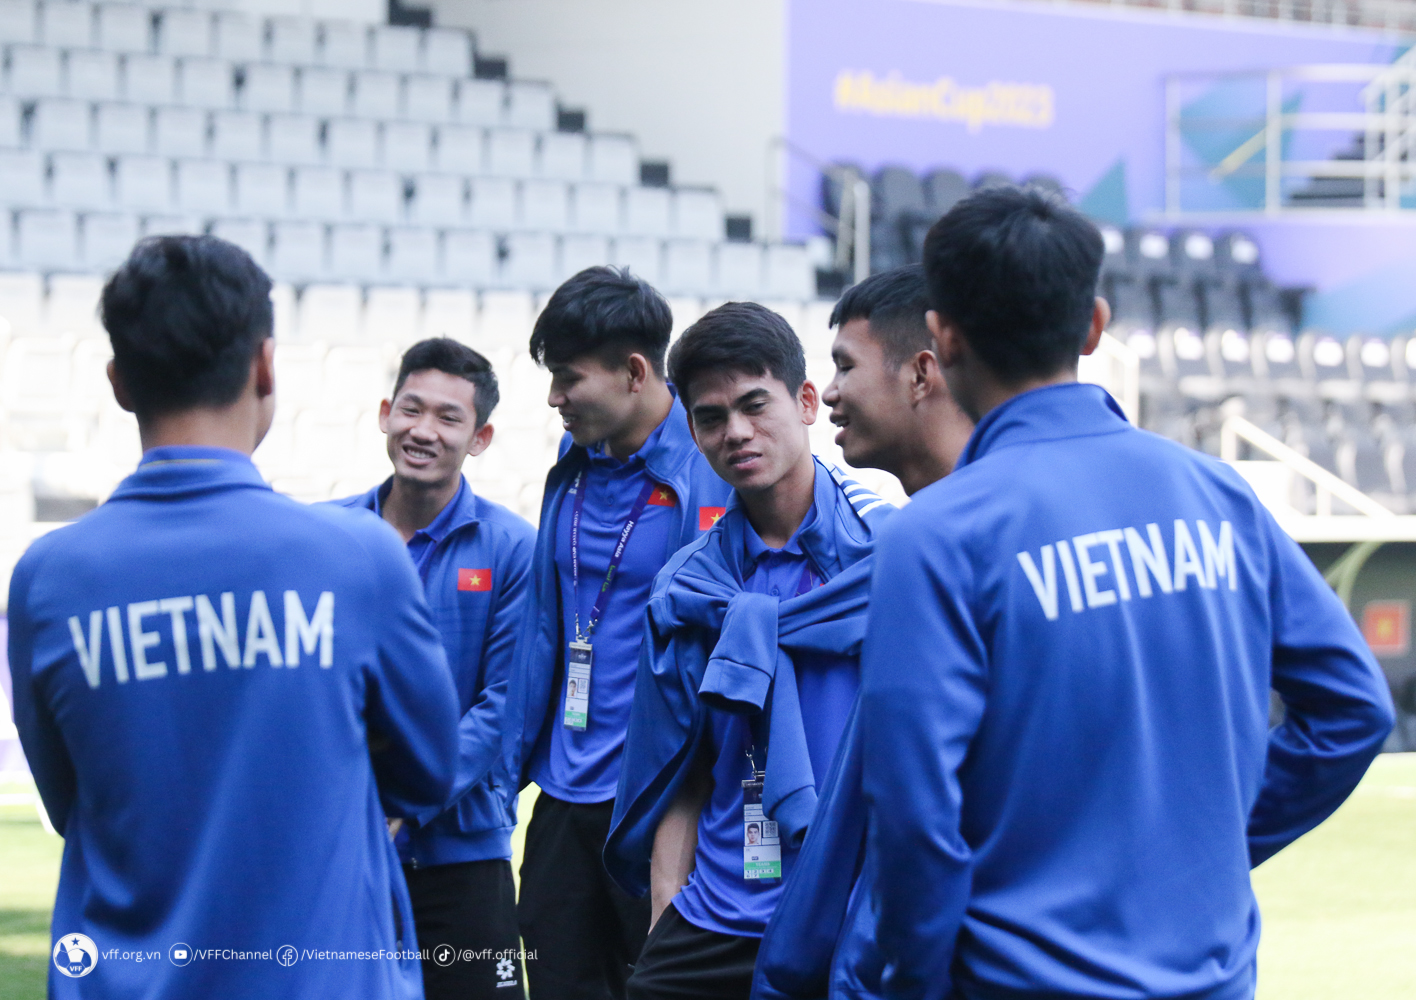 HLV Philippe Troussier: “Đội tuyển Việt Nam giữ vững động lực và hướng đến kết quả tốt nhất trước Iraq”